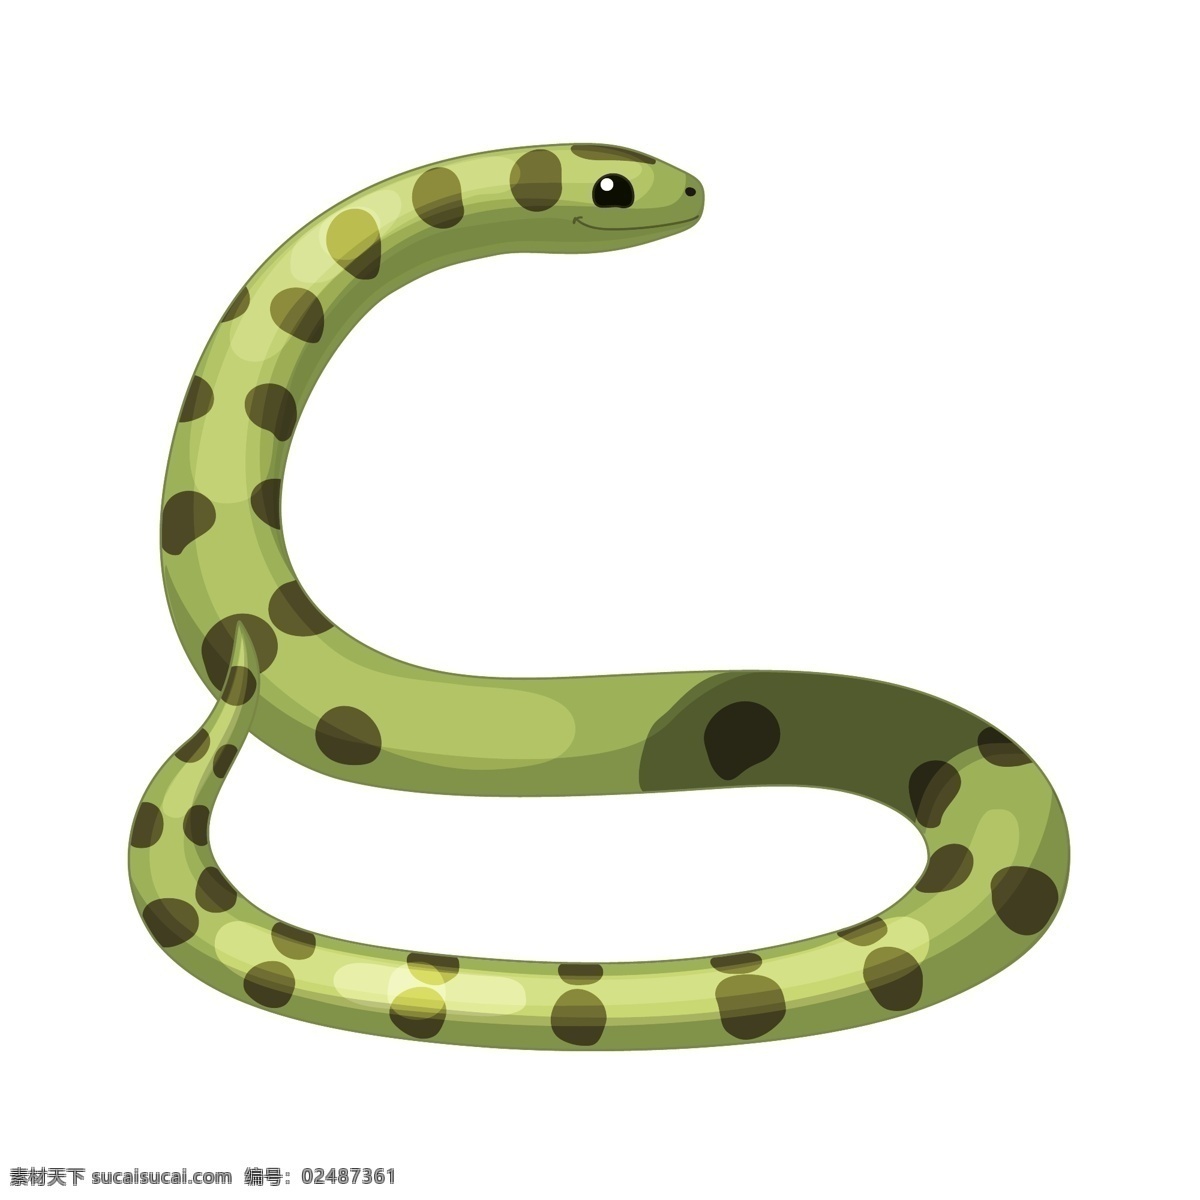 卡通小蛇 卡通动物 卡通蛇 可爱蛇 唱歌的蛇 爬行动物 蛇 蛇类卡通 动漫动画 动漫人物